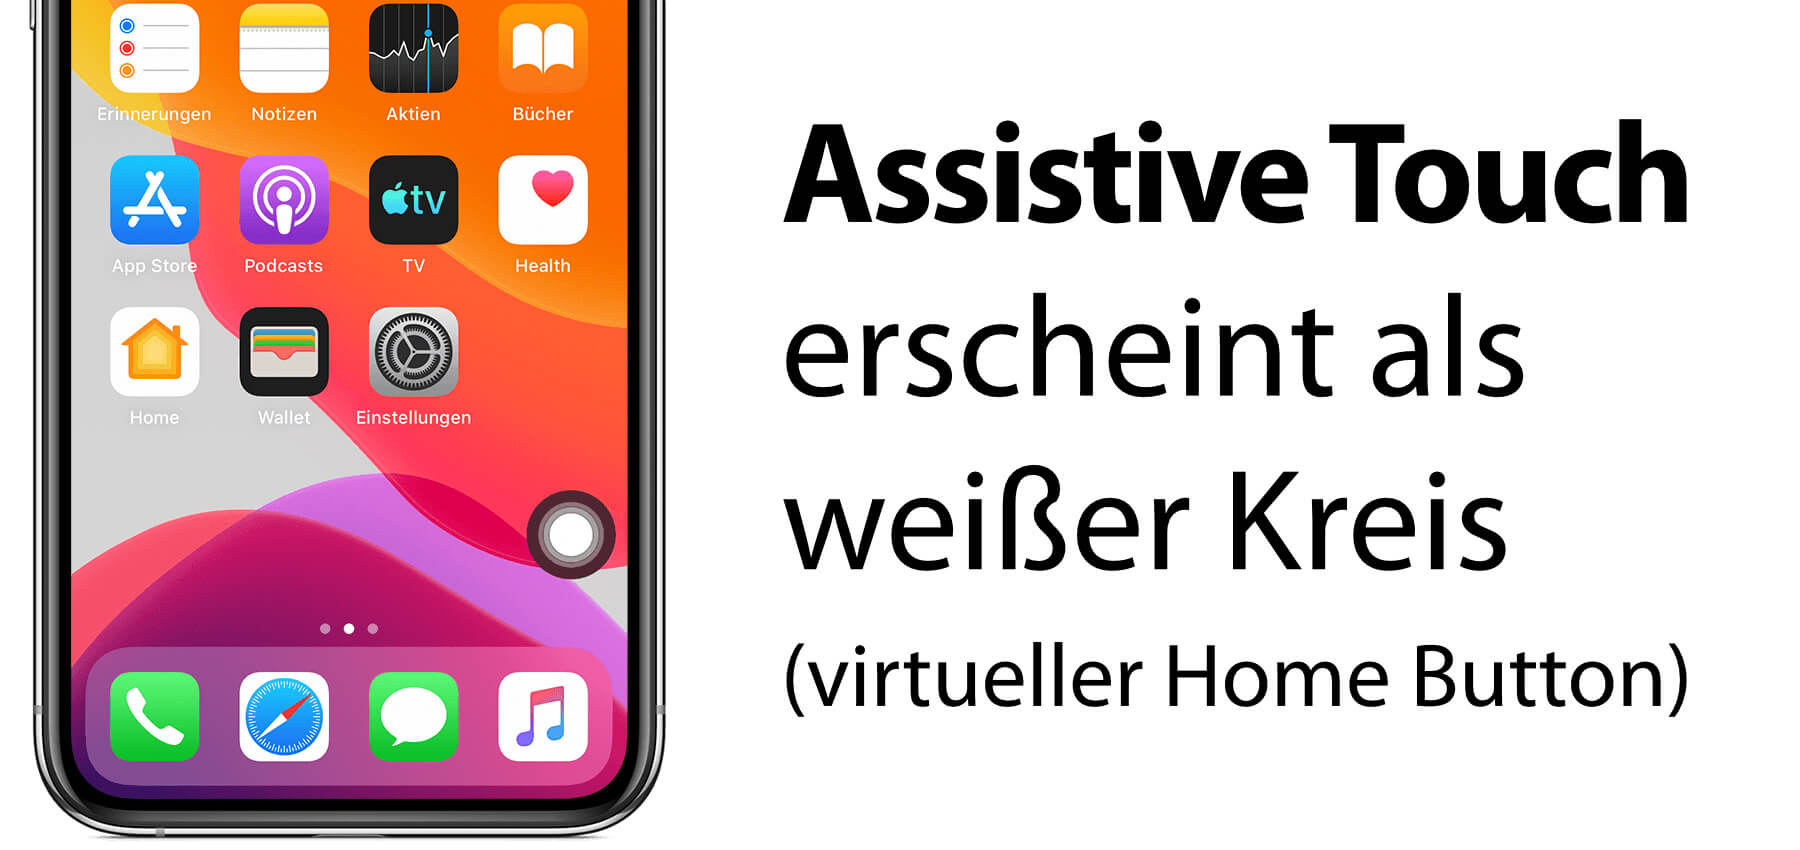 Defekter Home Button am iPhone – Assistive Touch nutzen » Sir Apfelot